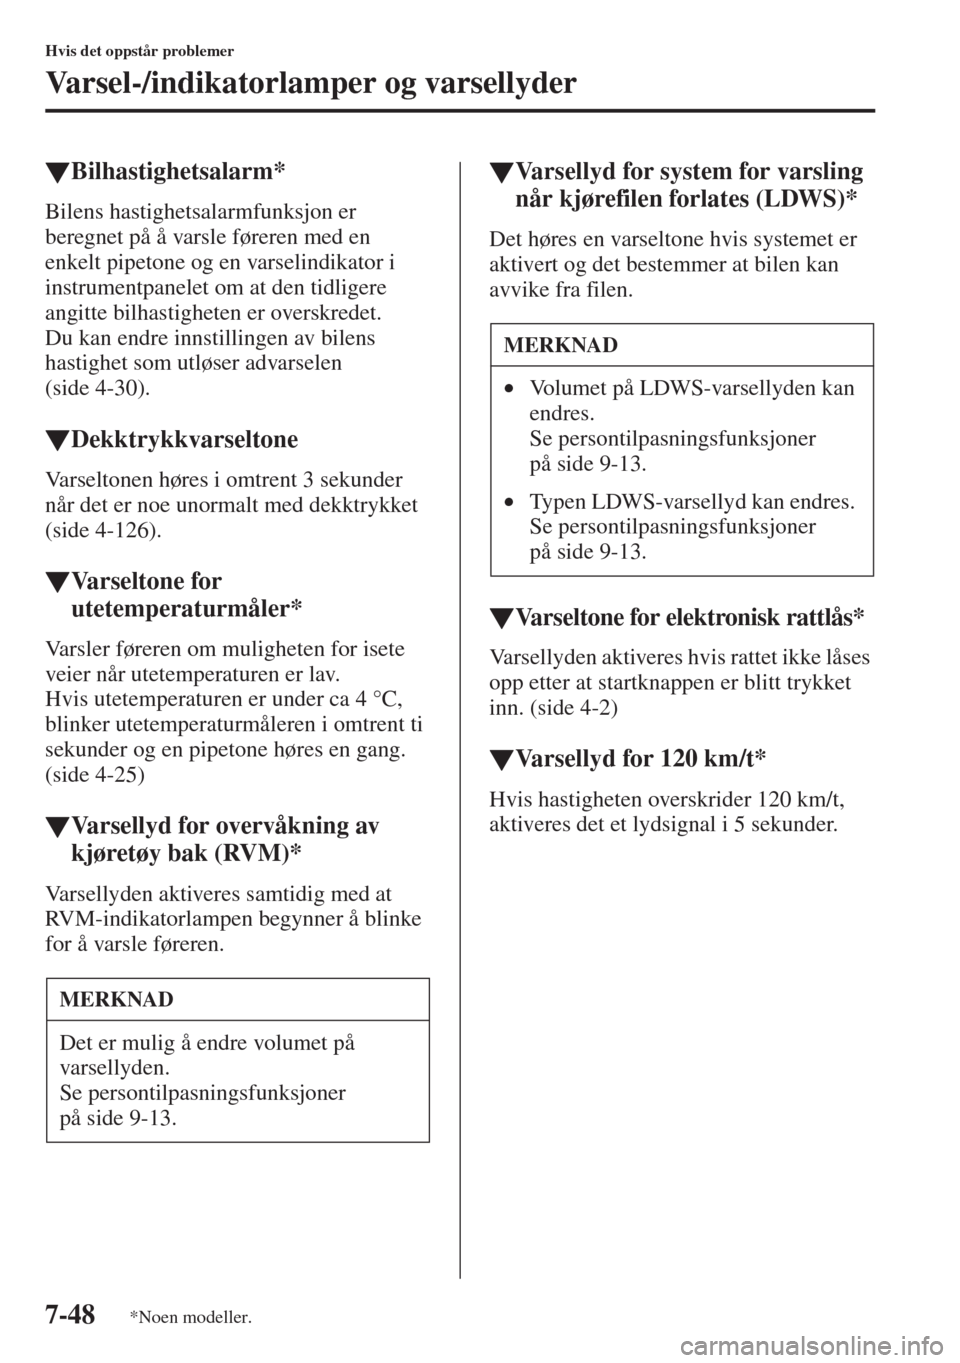 MAZDA MODEL CX-5 2013  Brukerhåndbok (in Norwegian) 7-48
Hvis det oppstår problemer
Varsel-/indikatorlamper og varsellyder
tBilhastighetsalarm*
Bilens hastighetsalarmfunksjon er 
beregnet på å varsle føreren med en 
enkelt pipetone og en varselindi